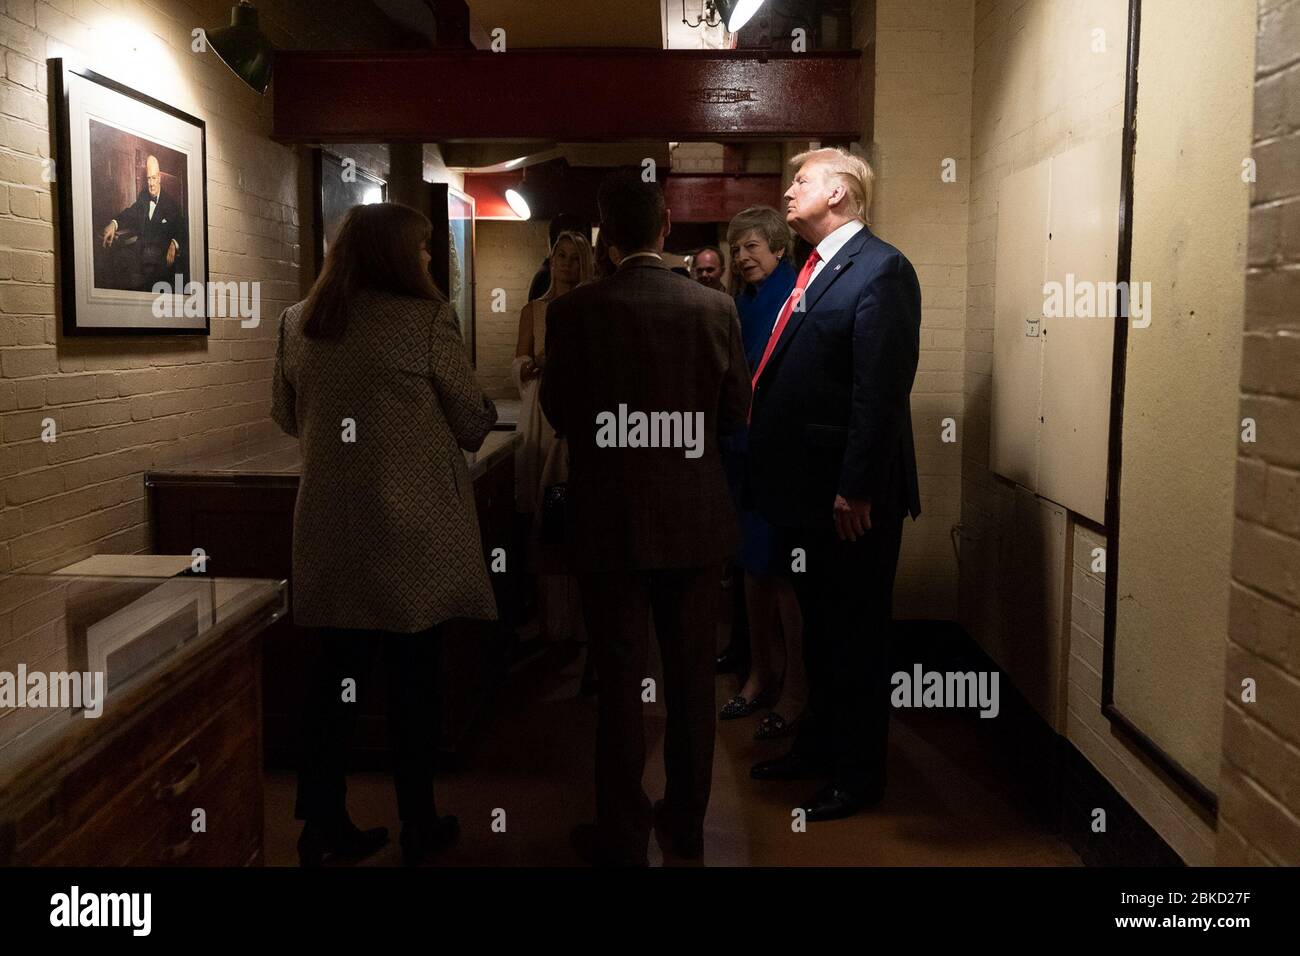 Präsident Donald J. Trump und First Lady Melania Trump besuchen zusammen mit der britischen Premierministerin Theresa May und ihrem Ehemann Philip May am Dienstag, den 4. Juni 2019, die Churchill war Rooms in London. Präsident Trump führt eine Rundreise durch die Churchill war Rooms Stockfoto